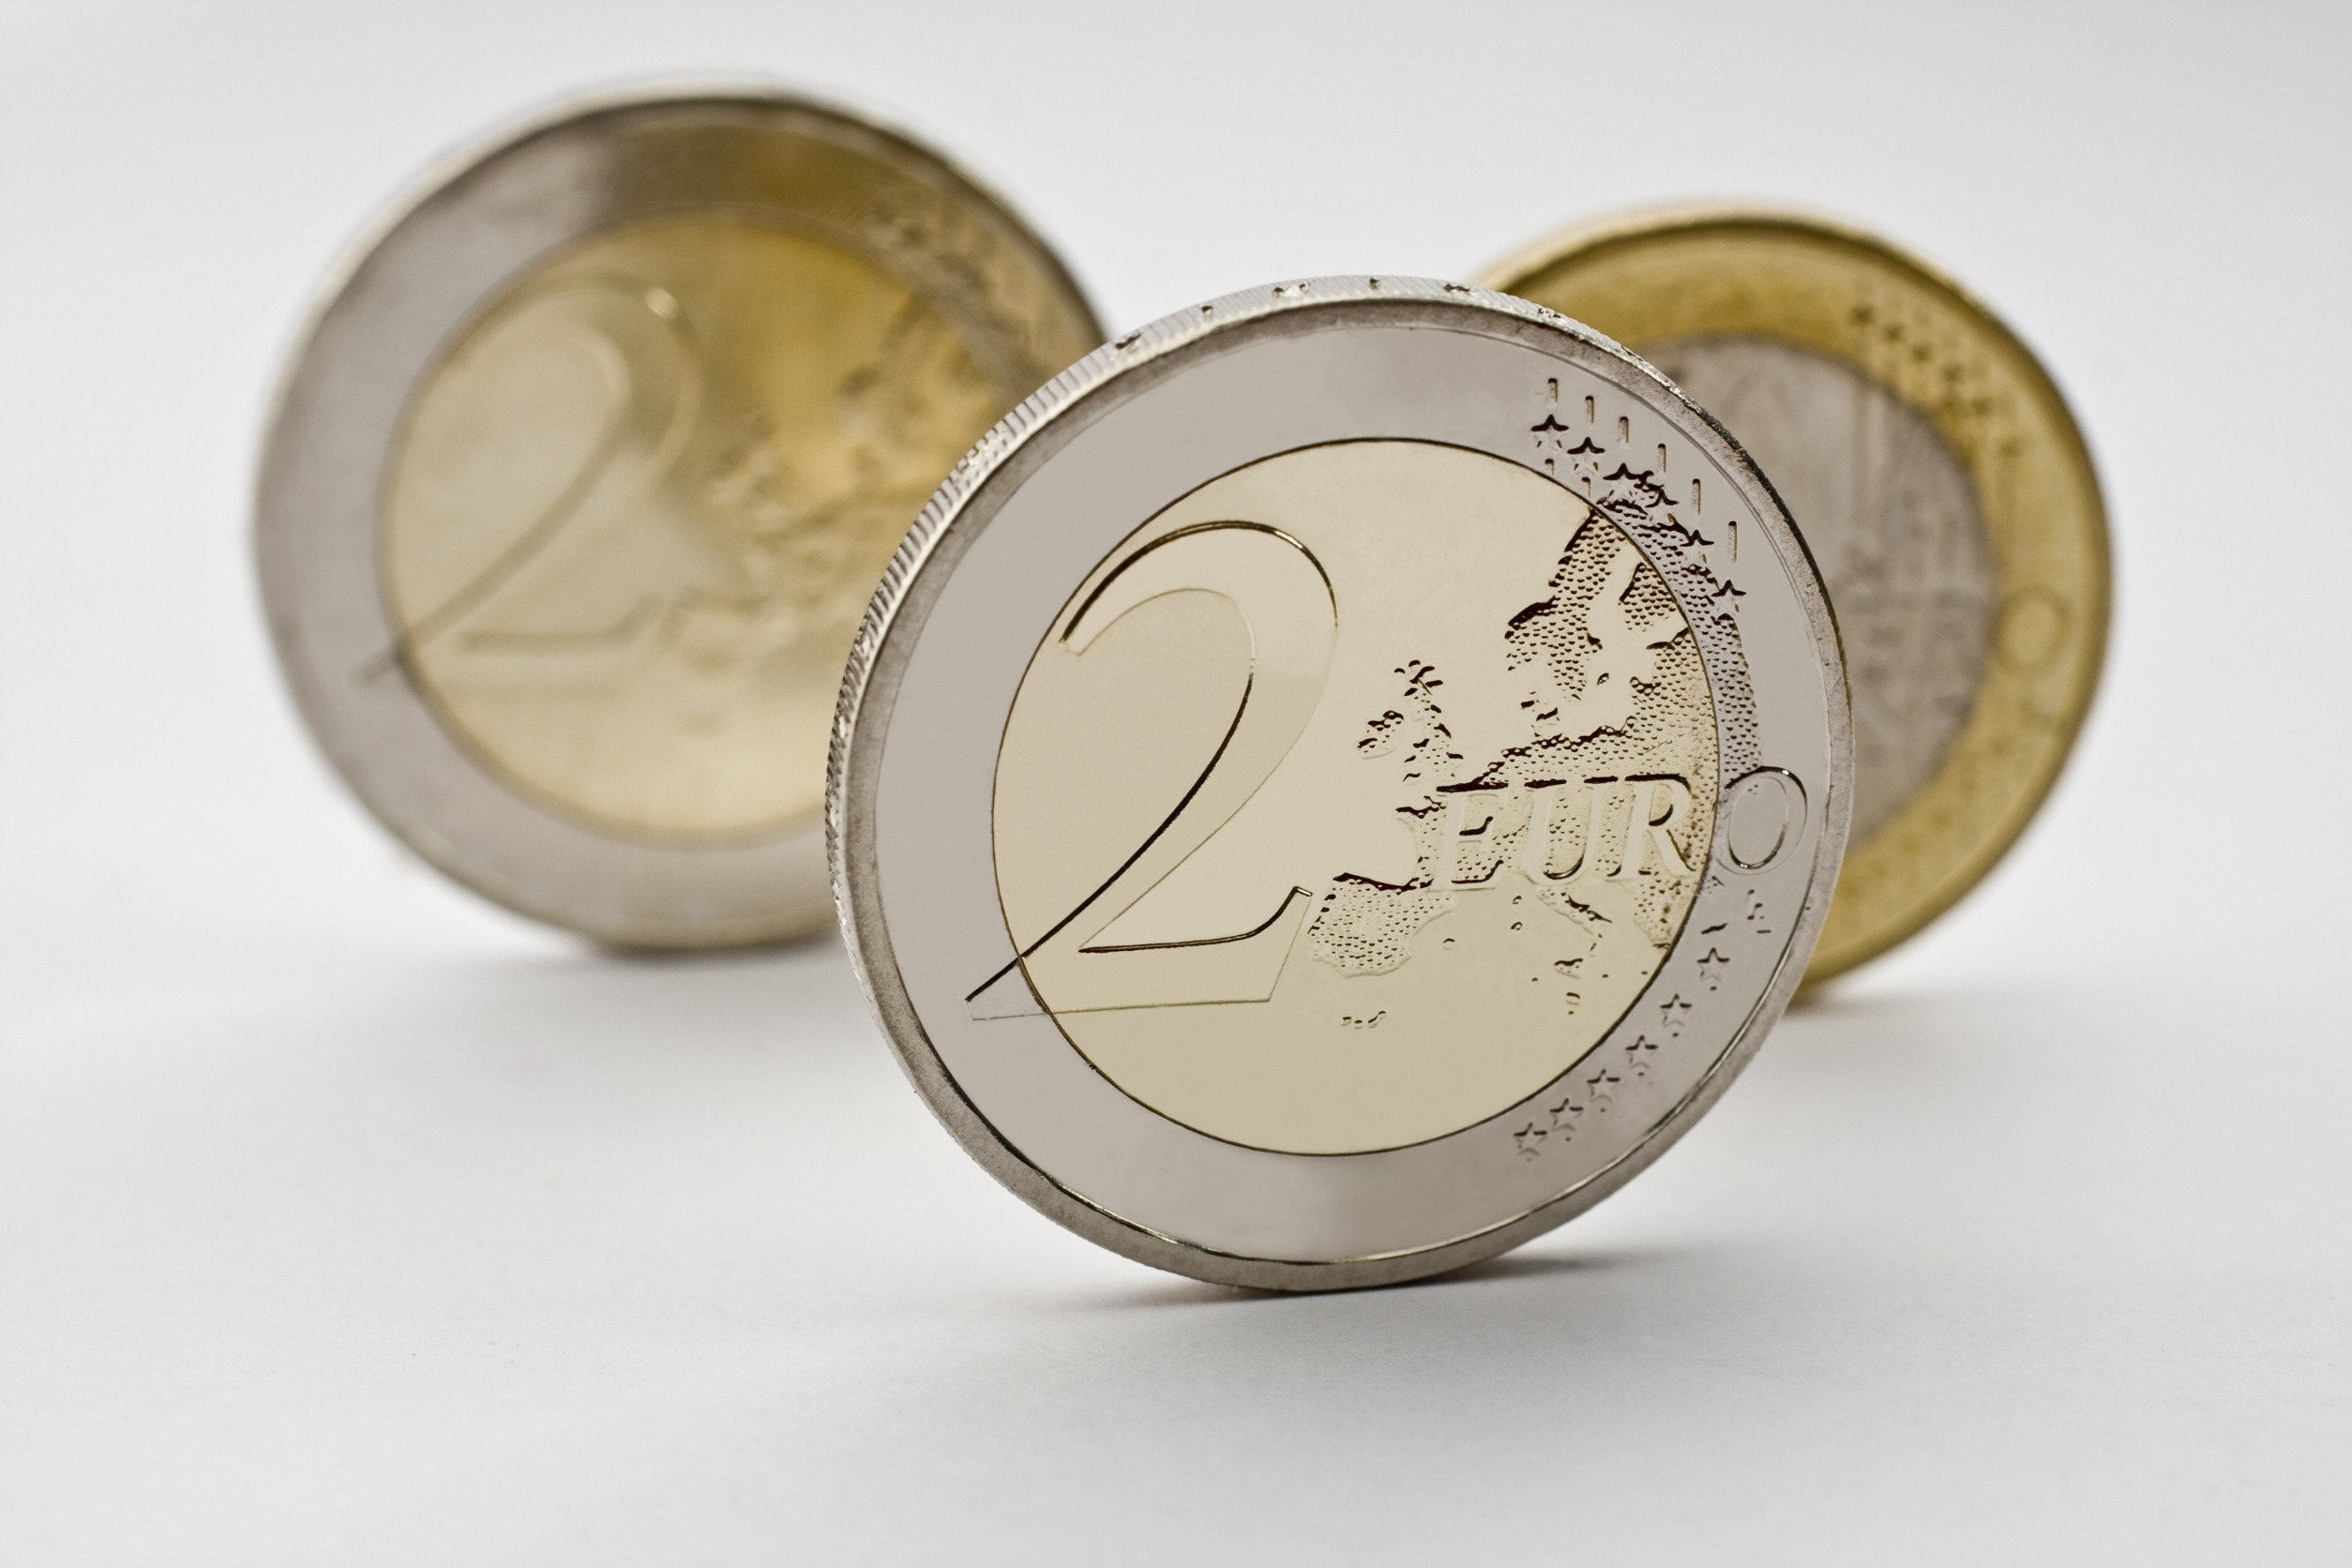 3 pièces de 2 euros placées les uns derrières les autres.